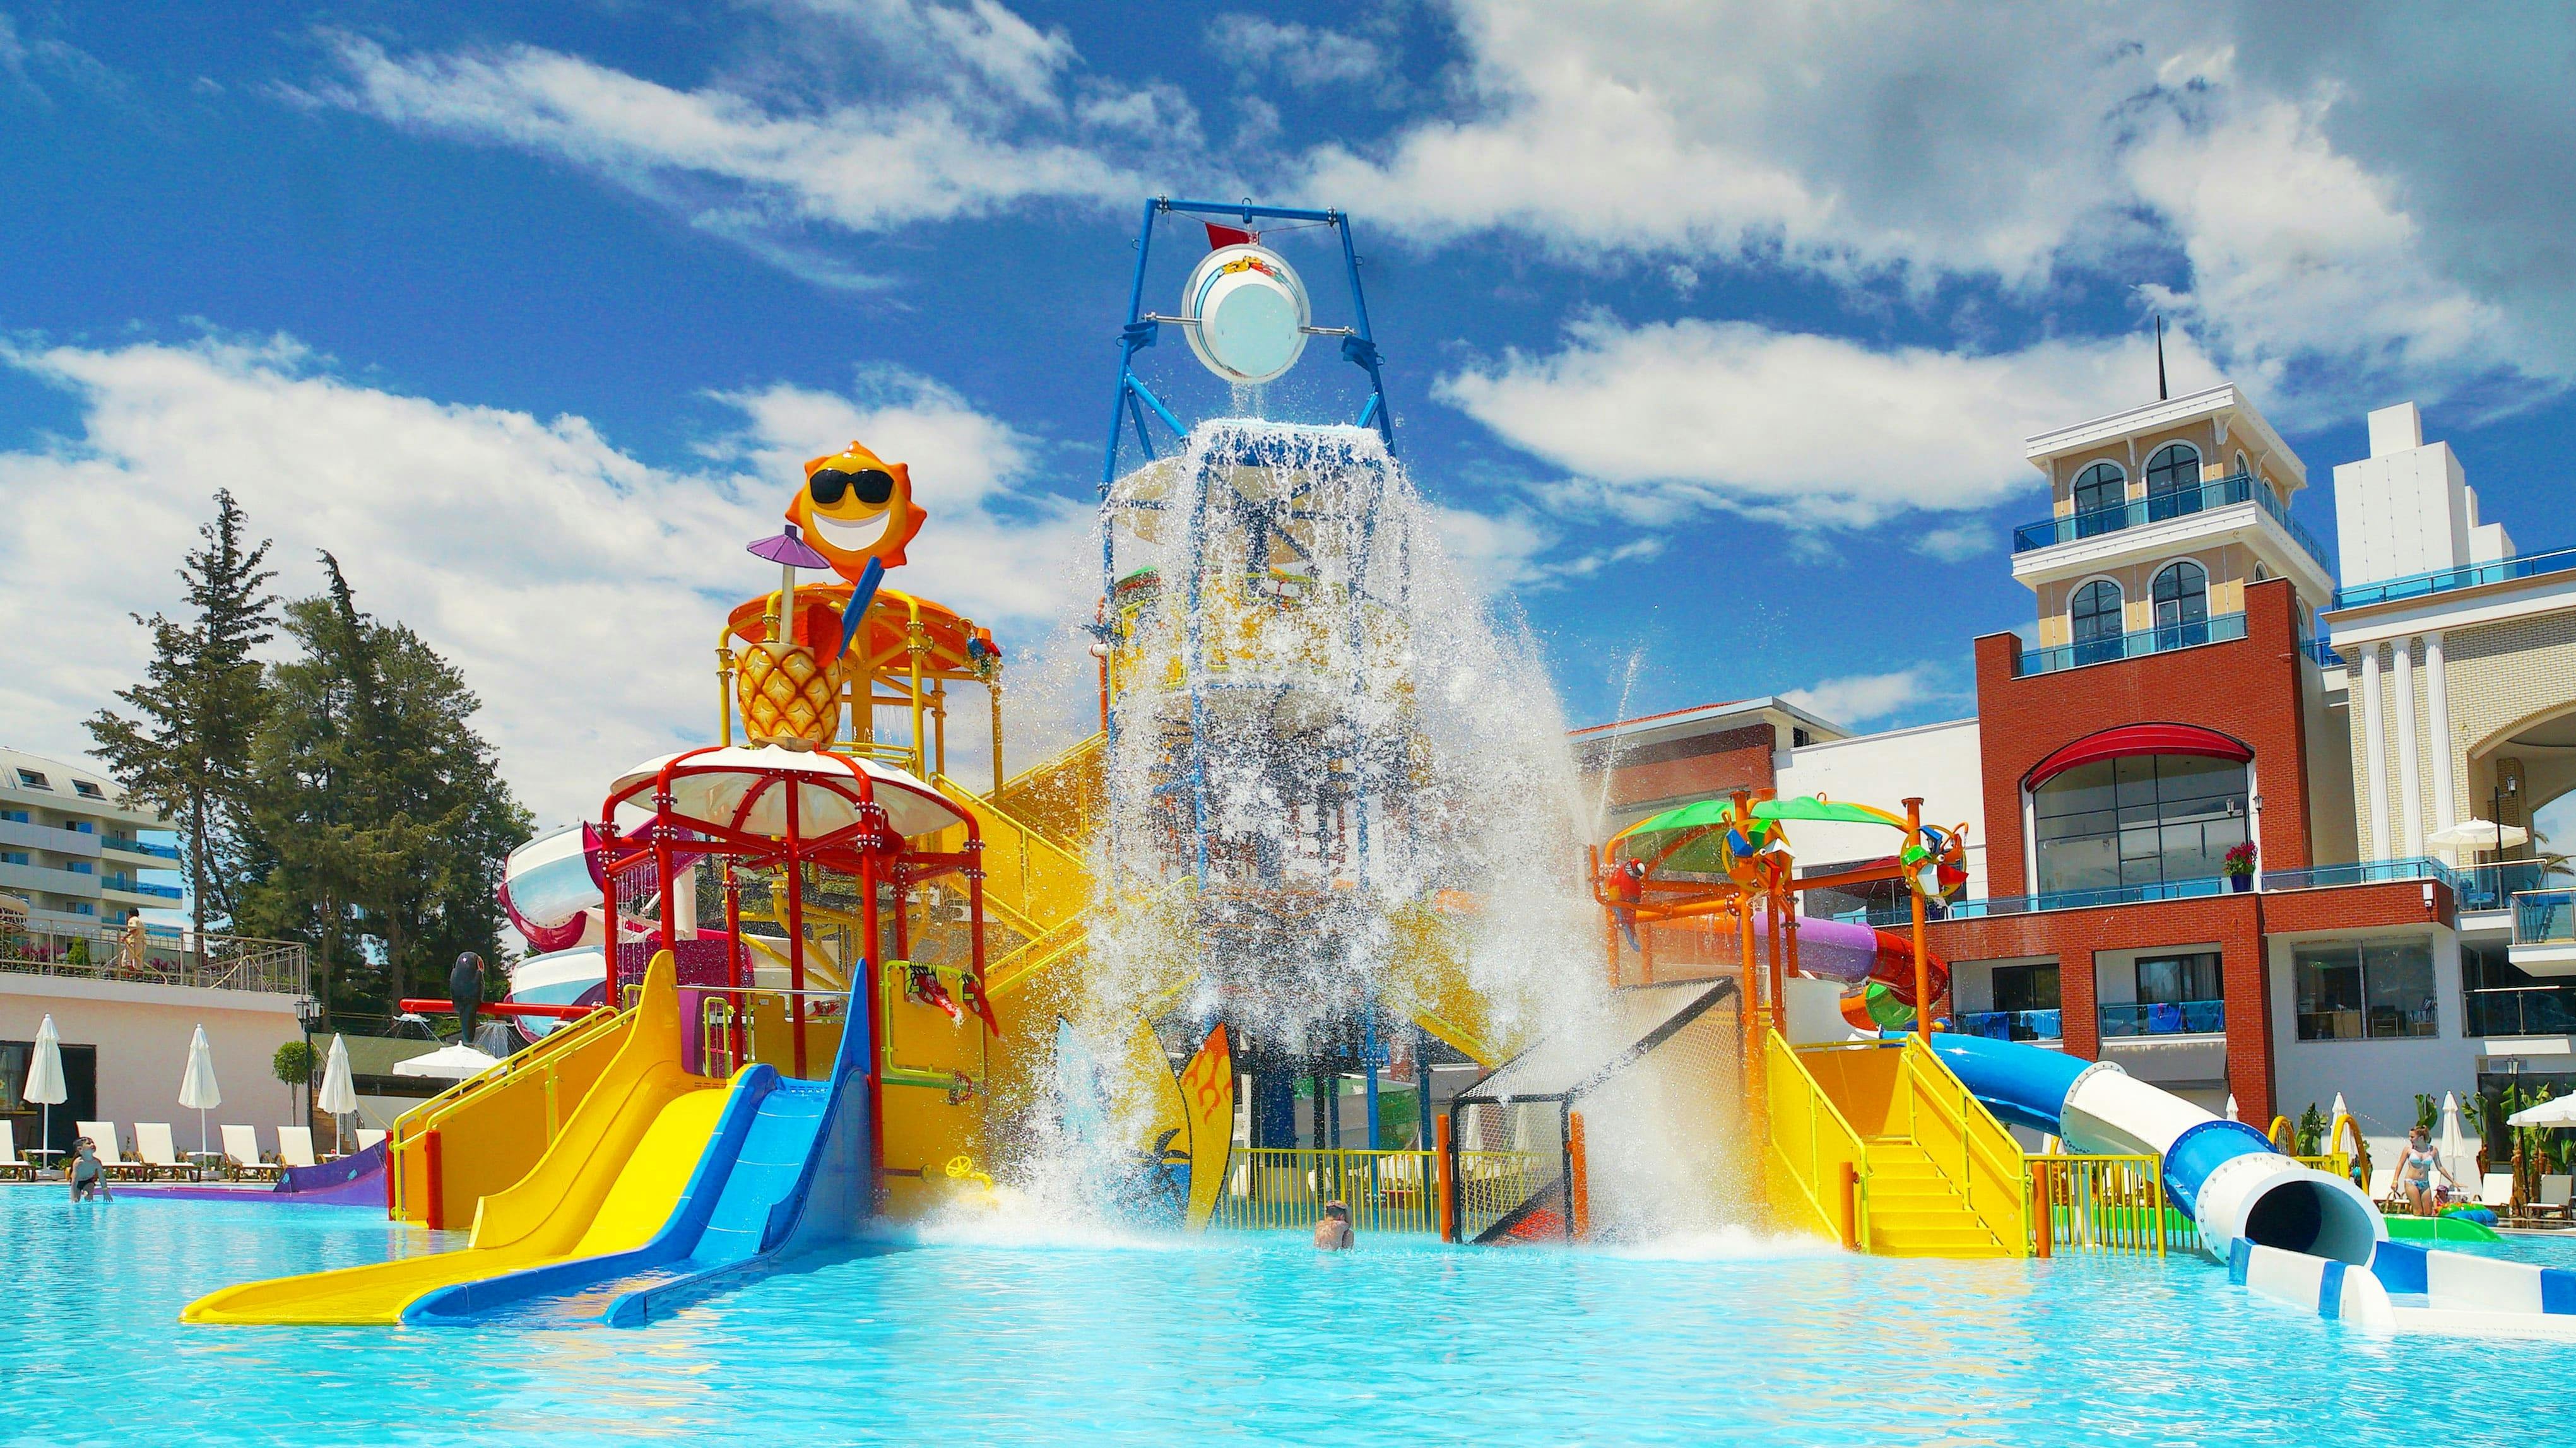 Aqua Fun City Waterpark